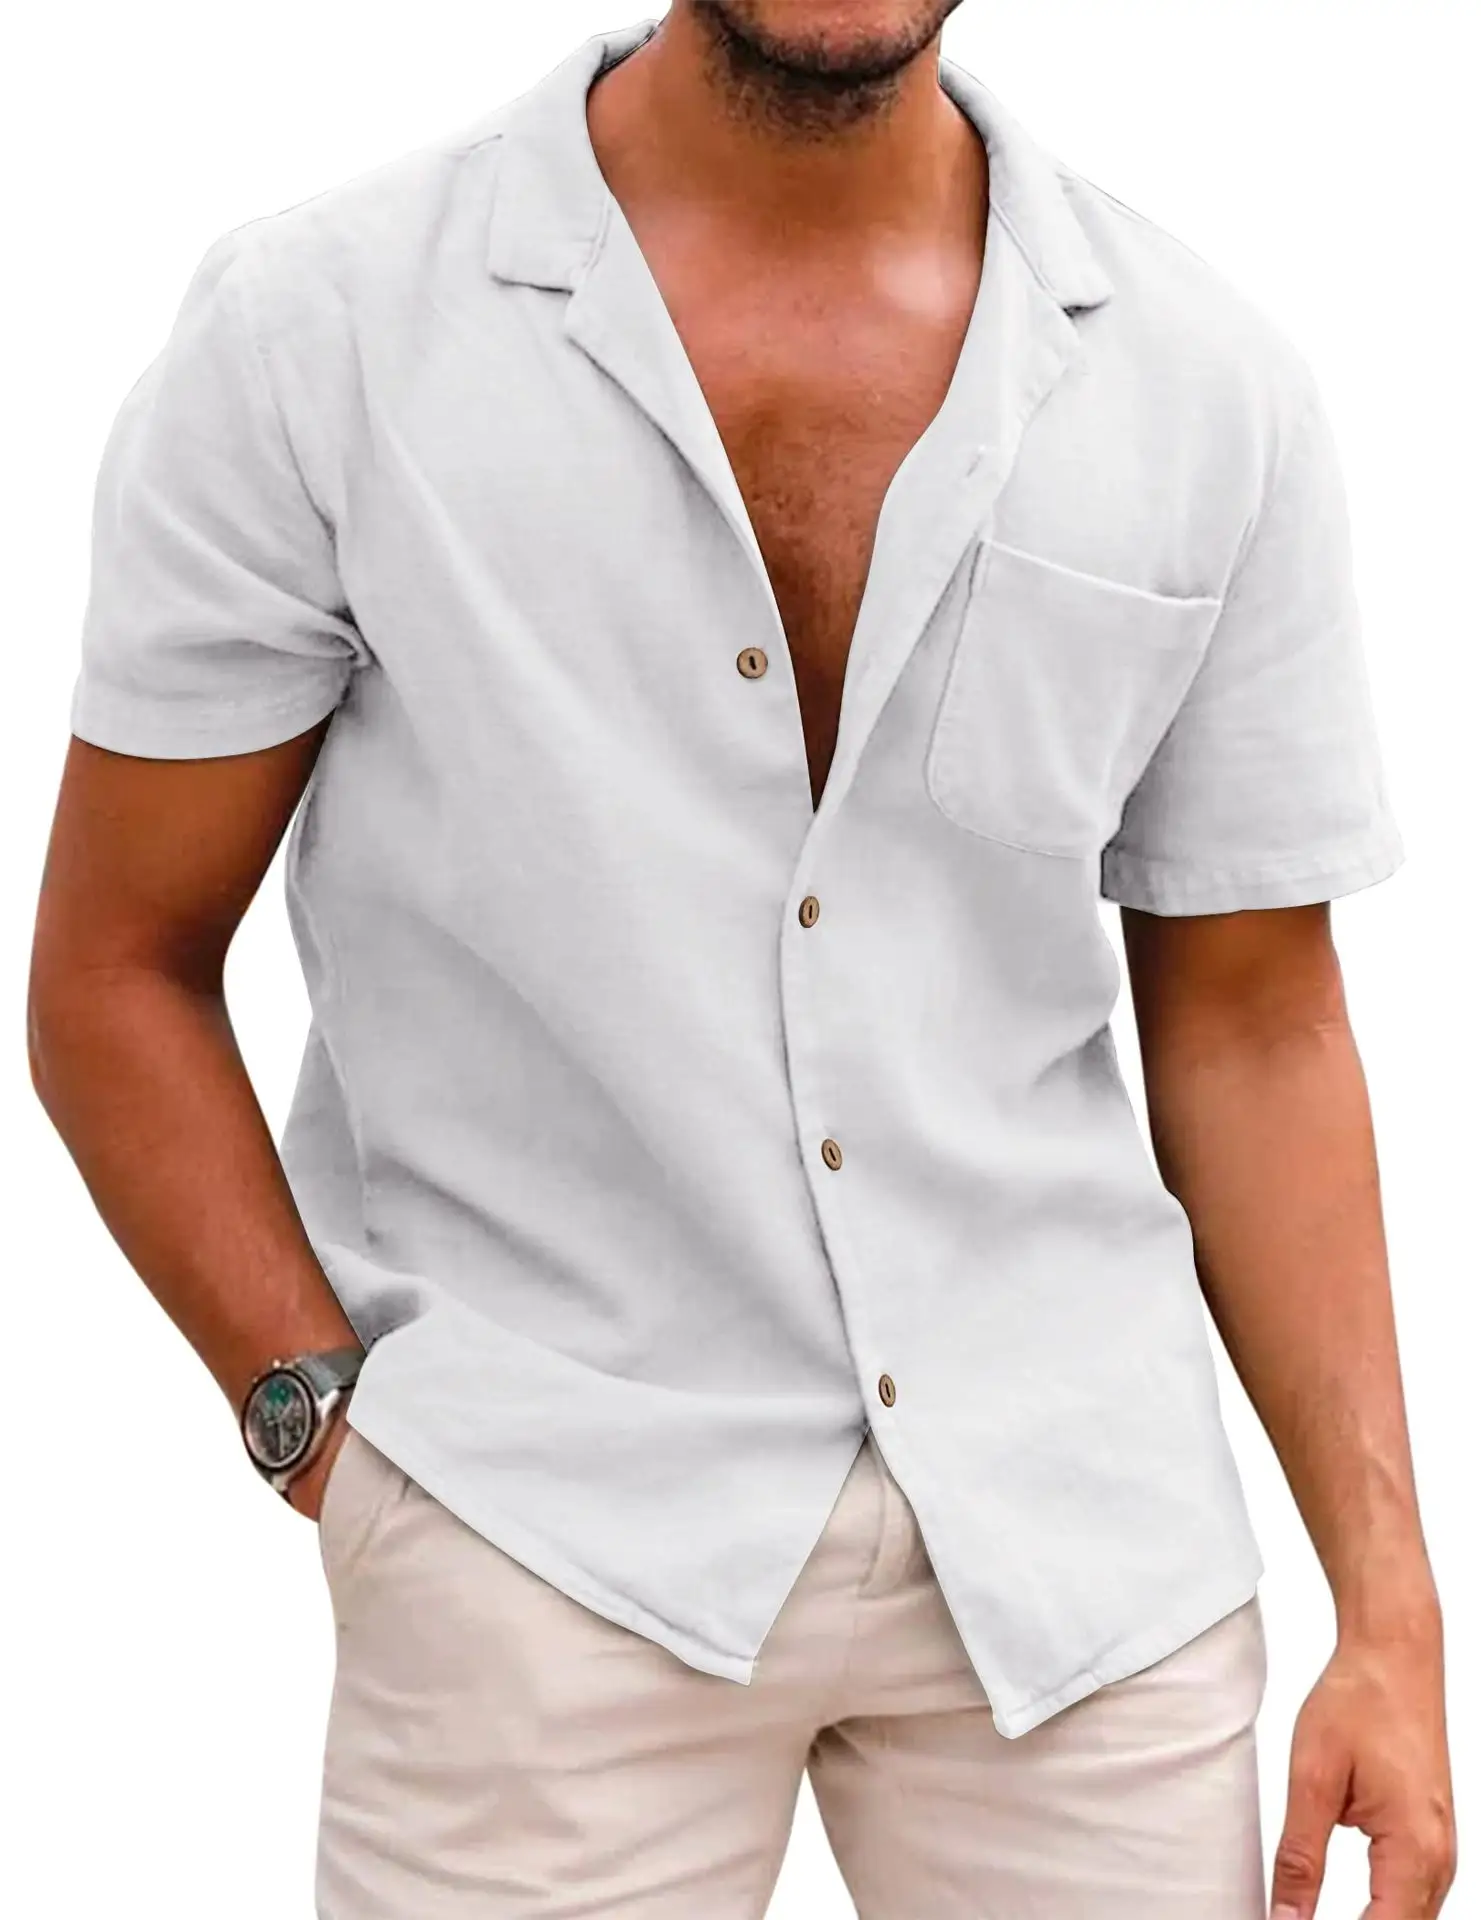 Мужская рубашка с воротником на пуговицах, из хлопка и льна